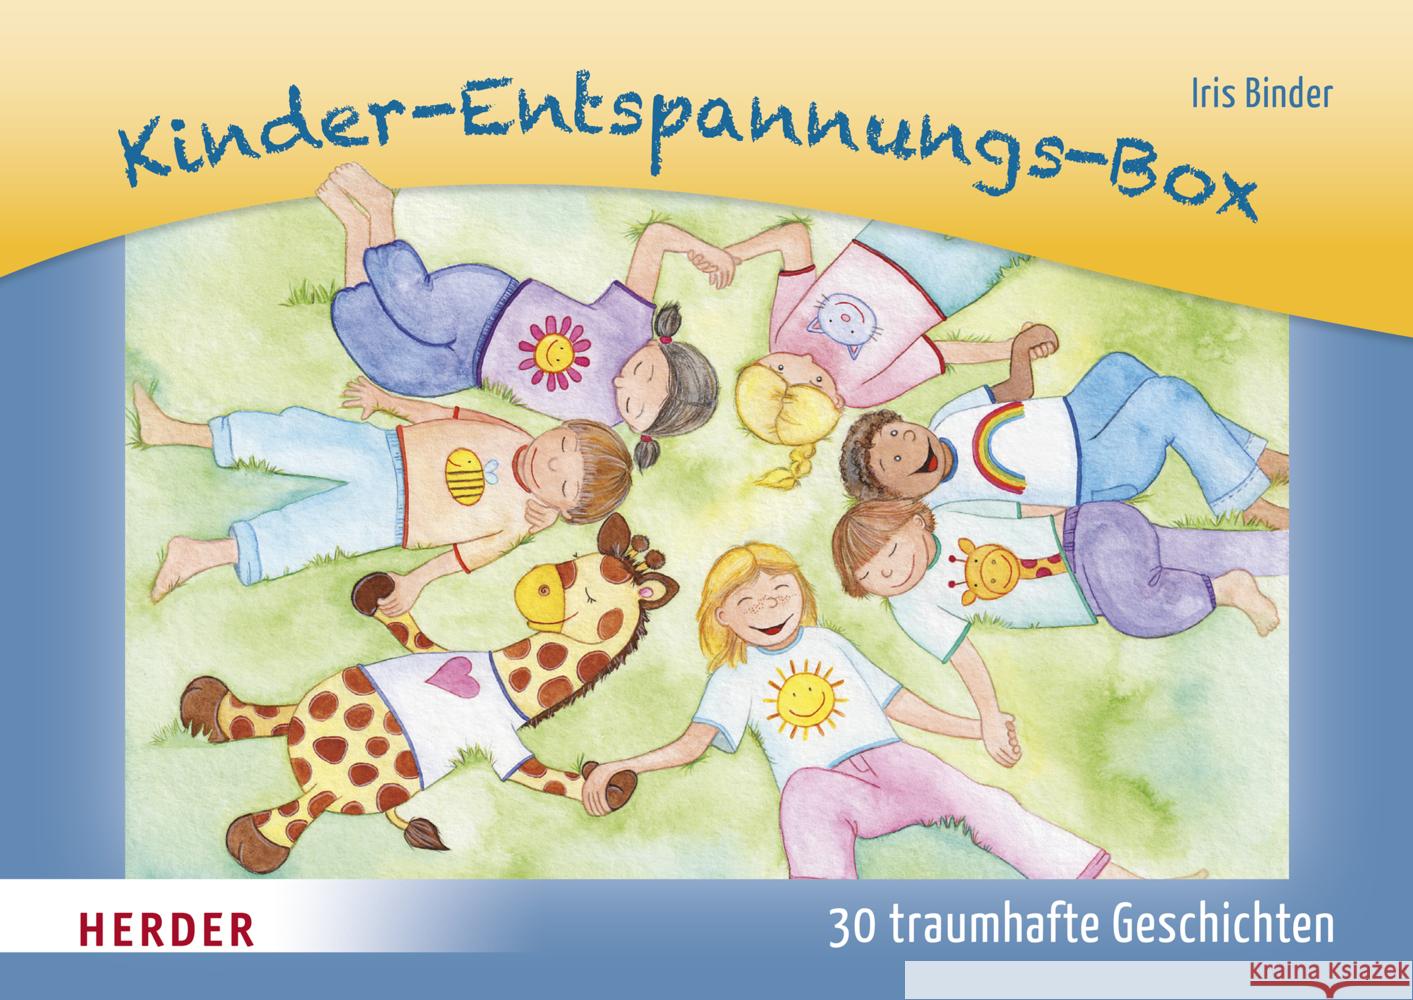 Kinder-Entspannungs-Box Binder, Iris 9783451390944 Herder, Freiburg